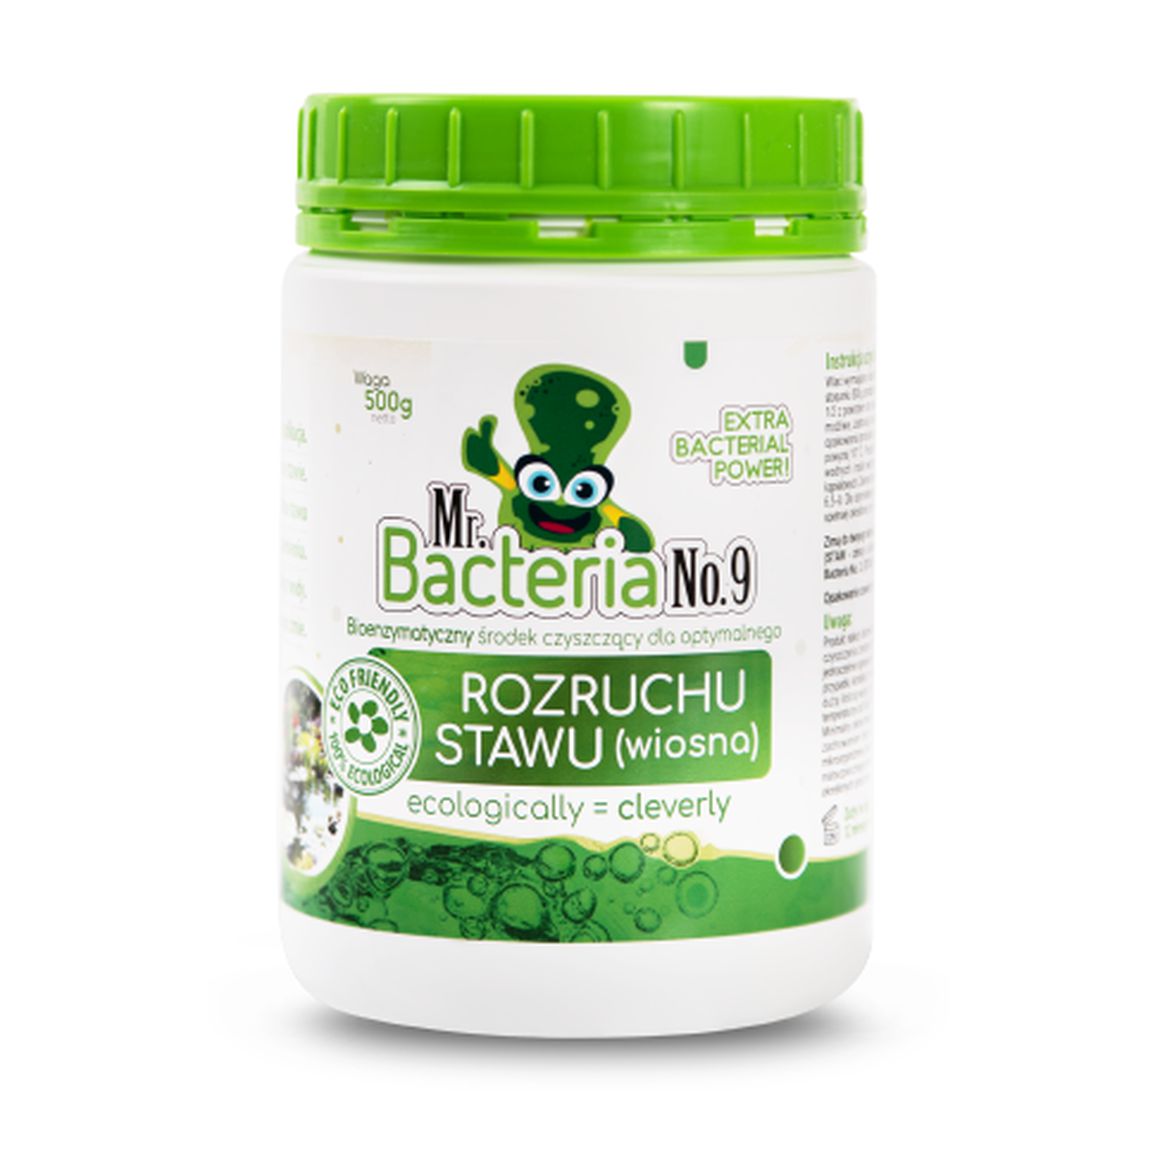 Mr. Bacteria No.9 Bioenzymatyczny środek czyszczący dla optymalnego